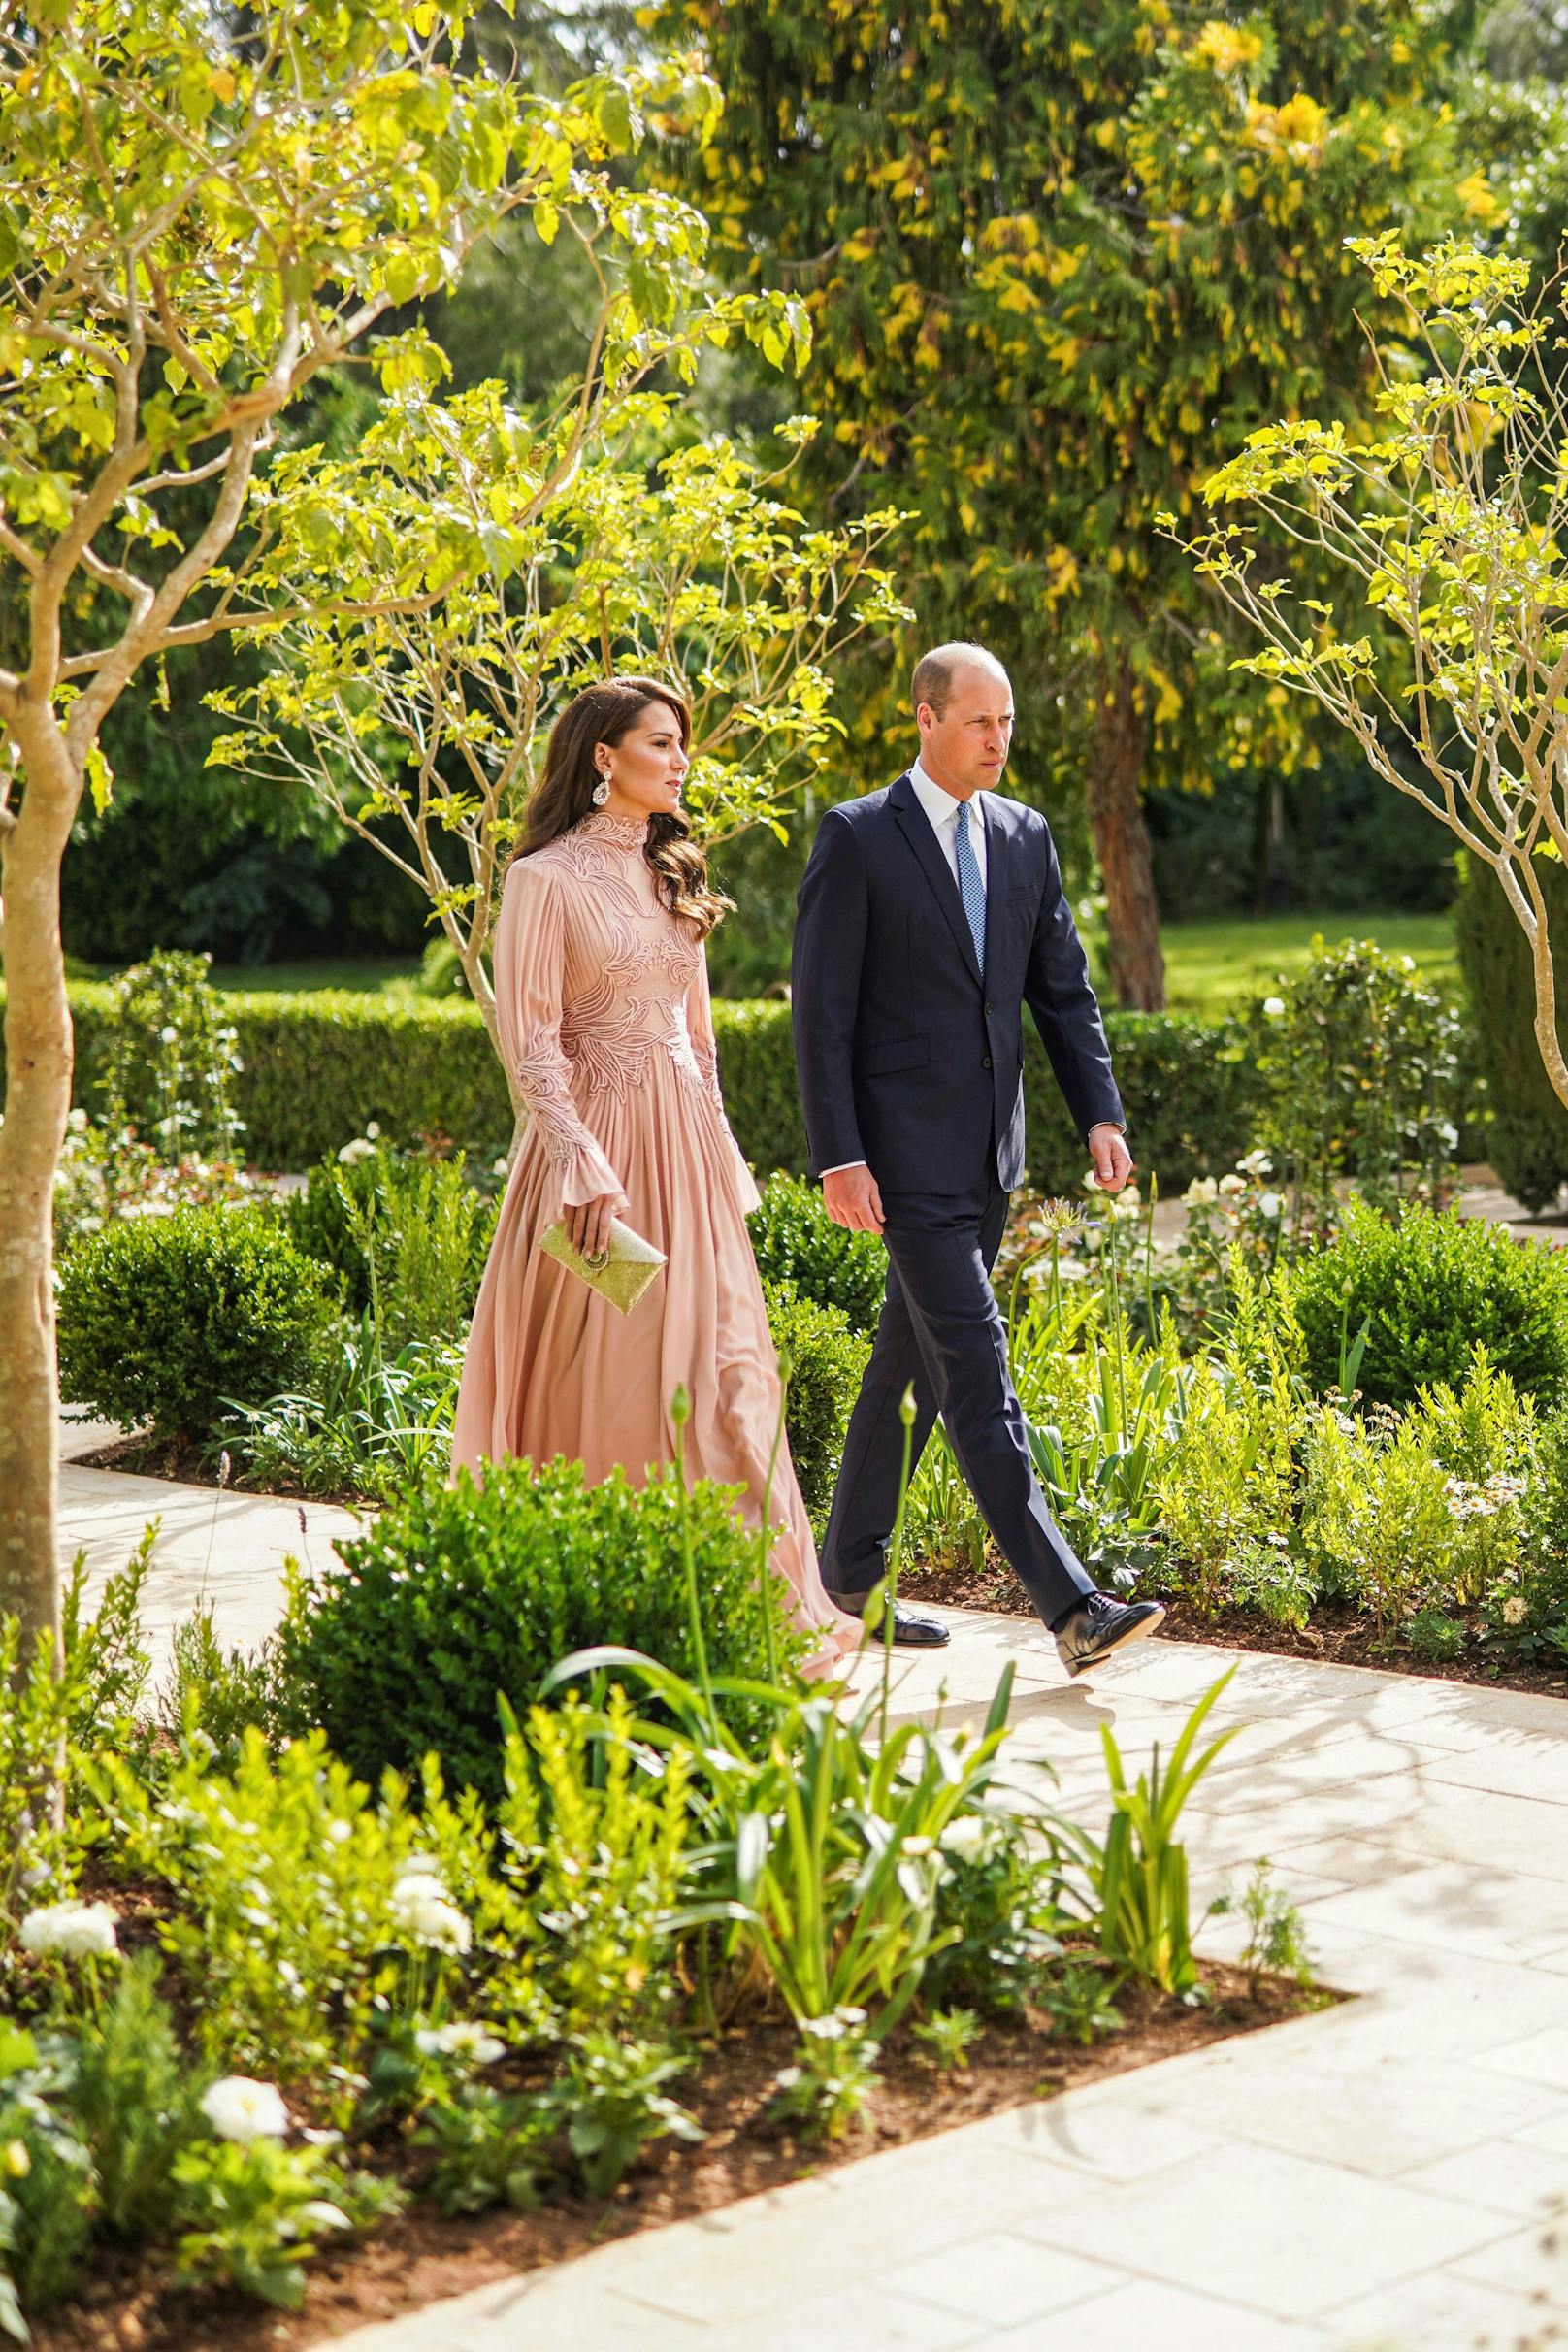 Jordanien-Hochzeit – Kates Kleid war nicht angemessen